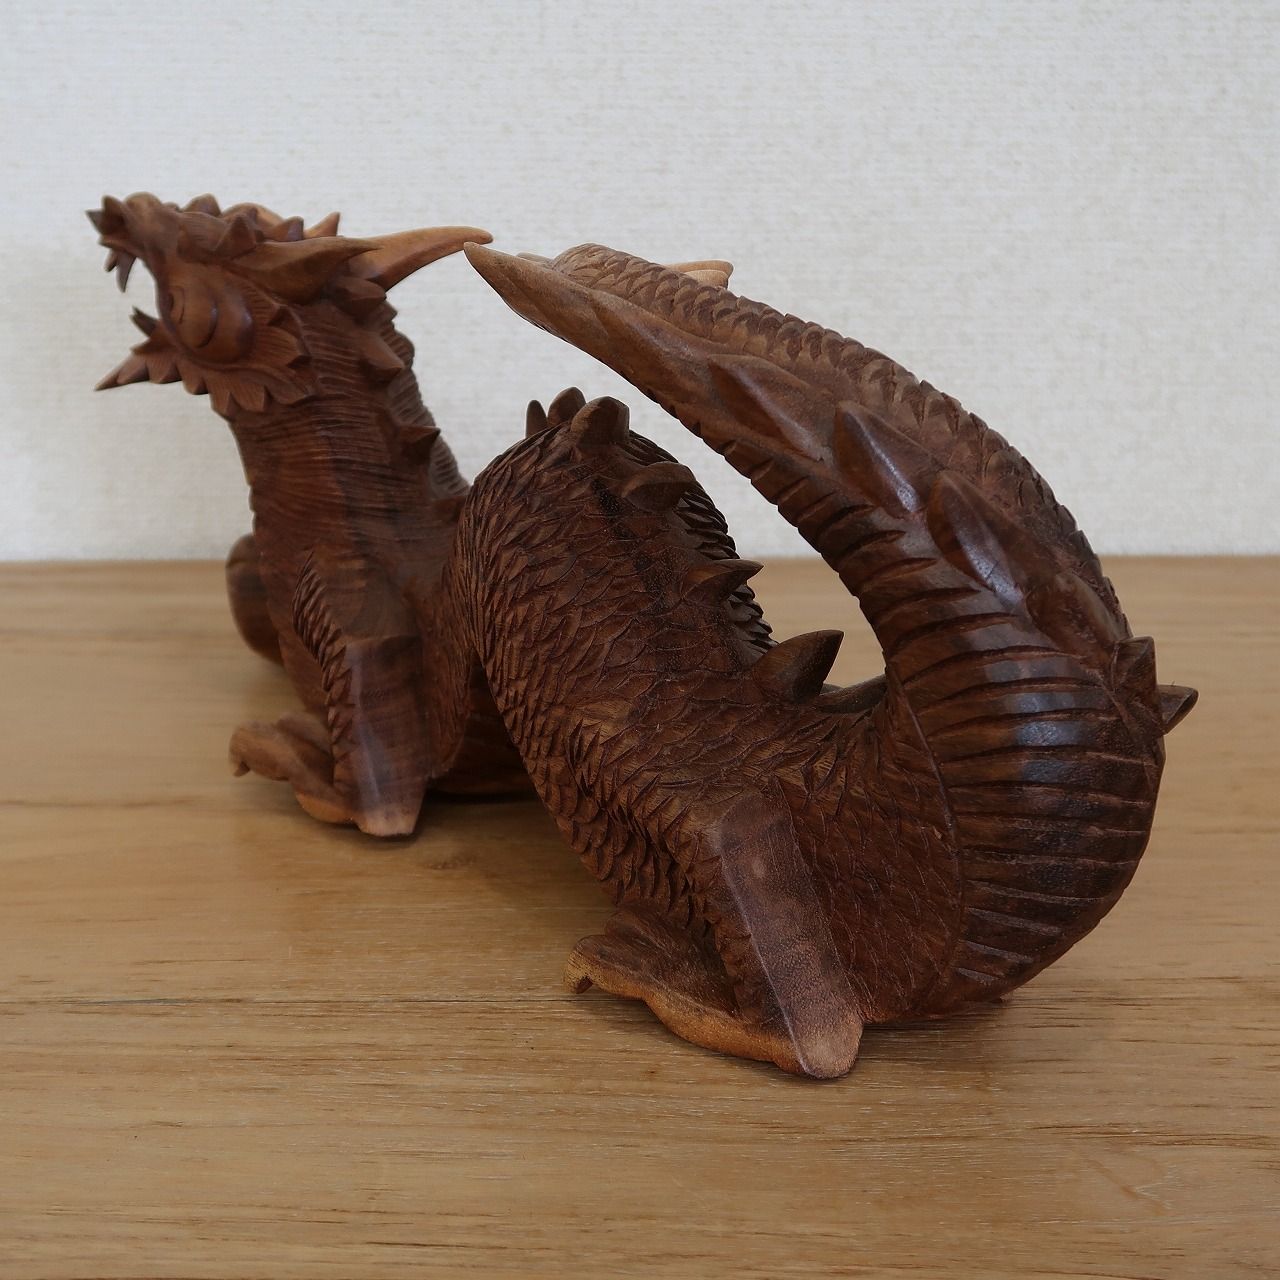 ドラゴンの木彫り 龍の木彫り スワール無垢材 左向き 50cm 竜の木彫り